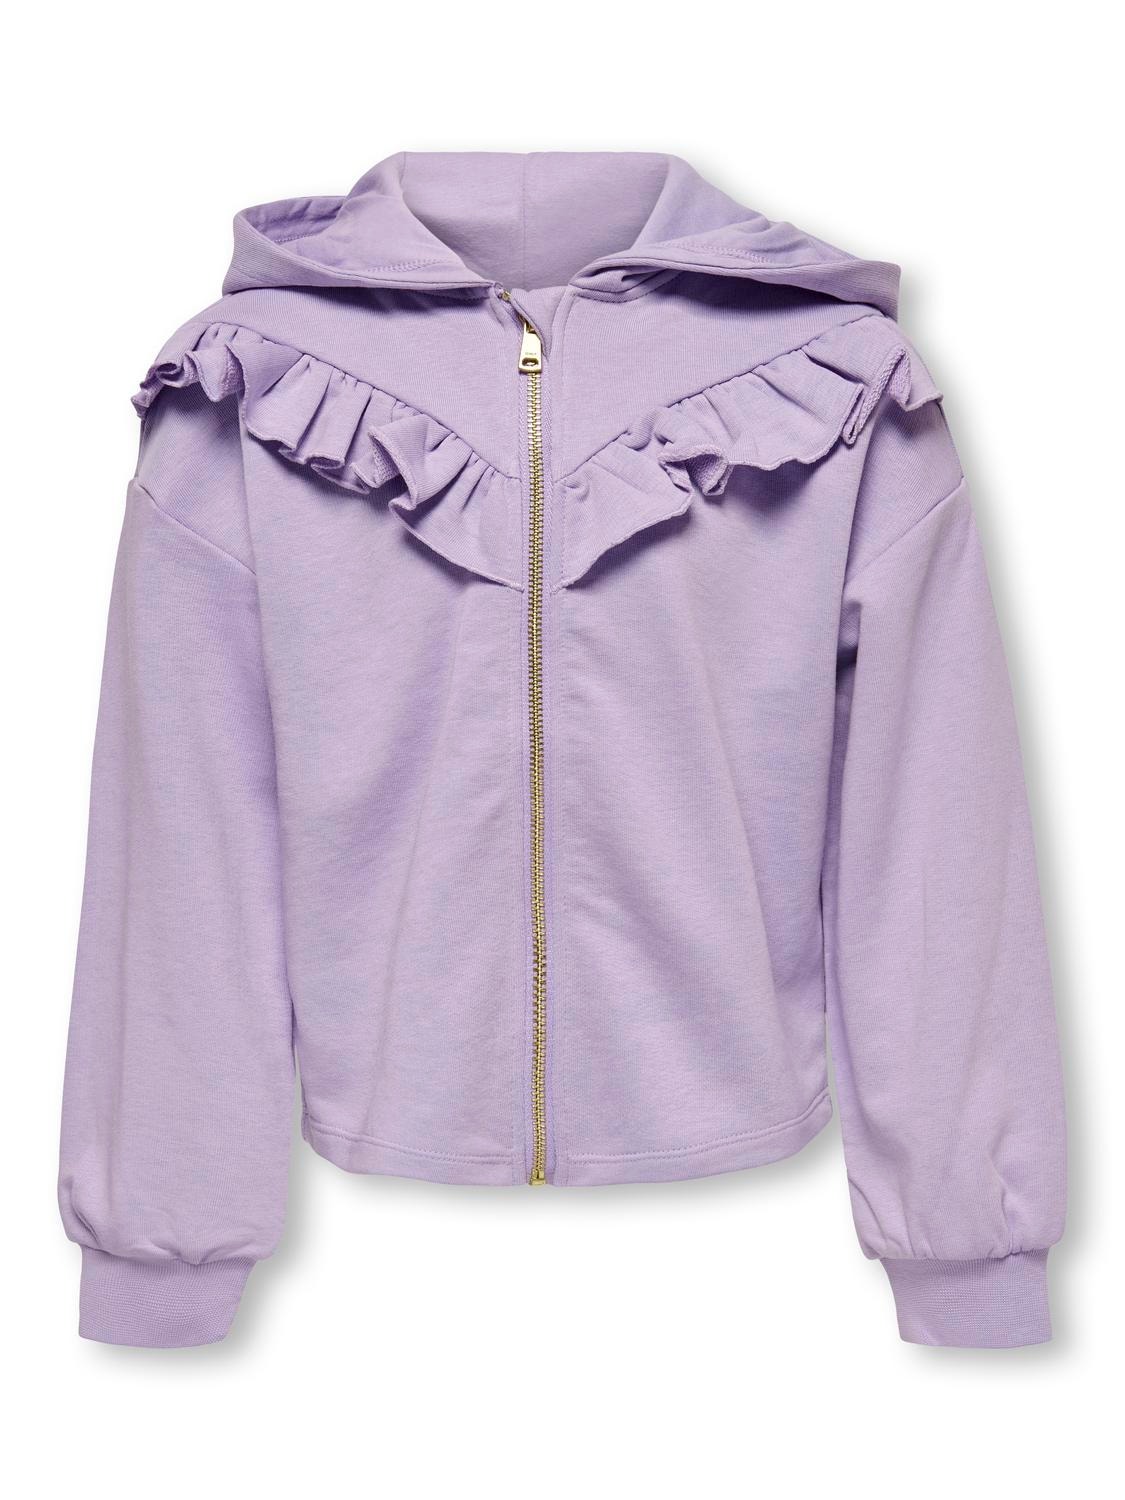 ONLY Regular fit Hoodie Sweatshirt -Purple Rose - 15281467